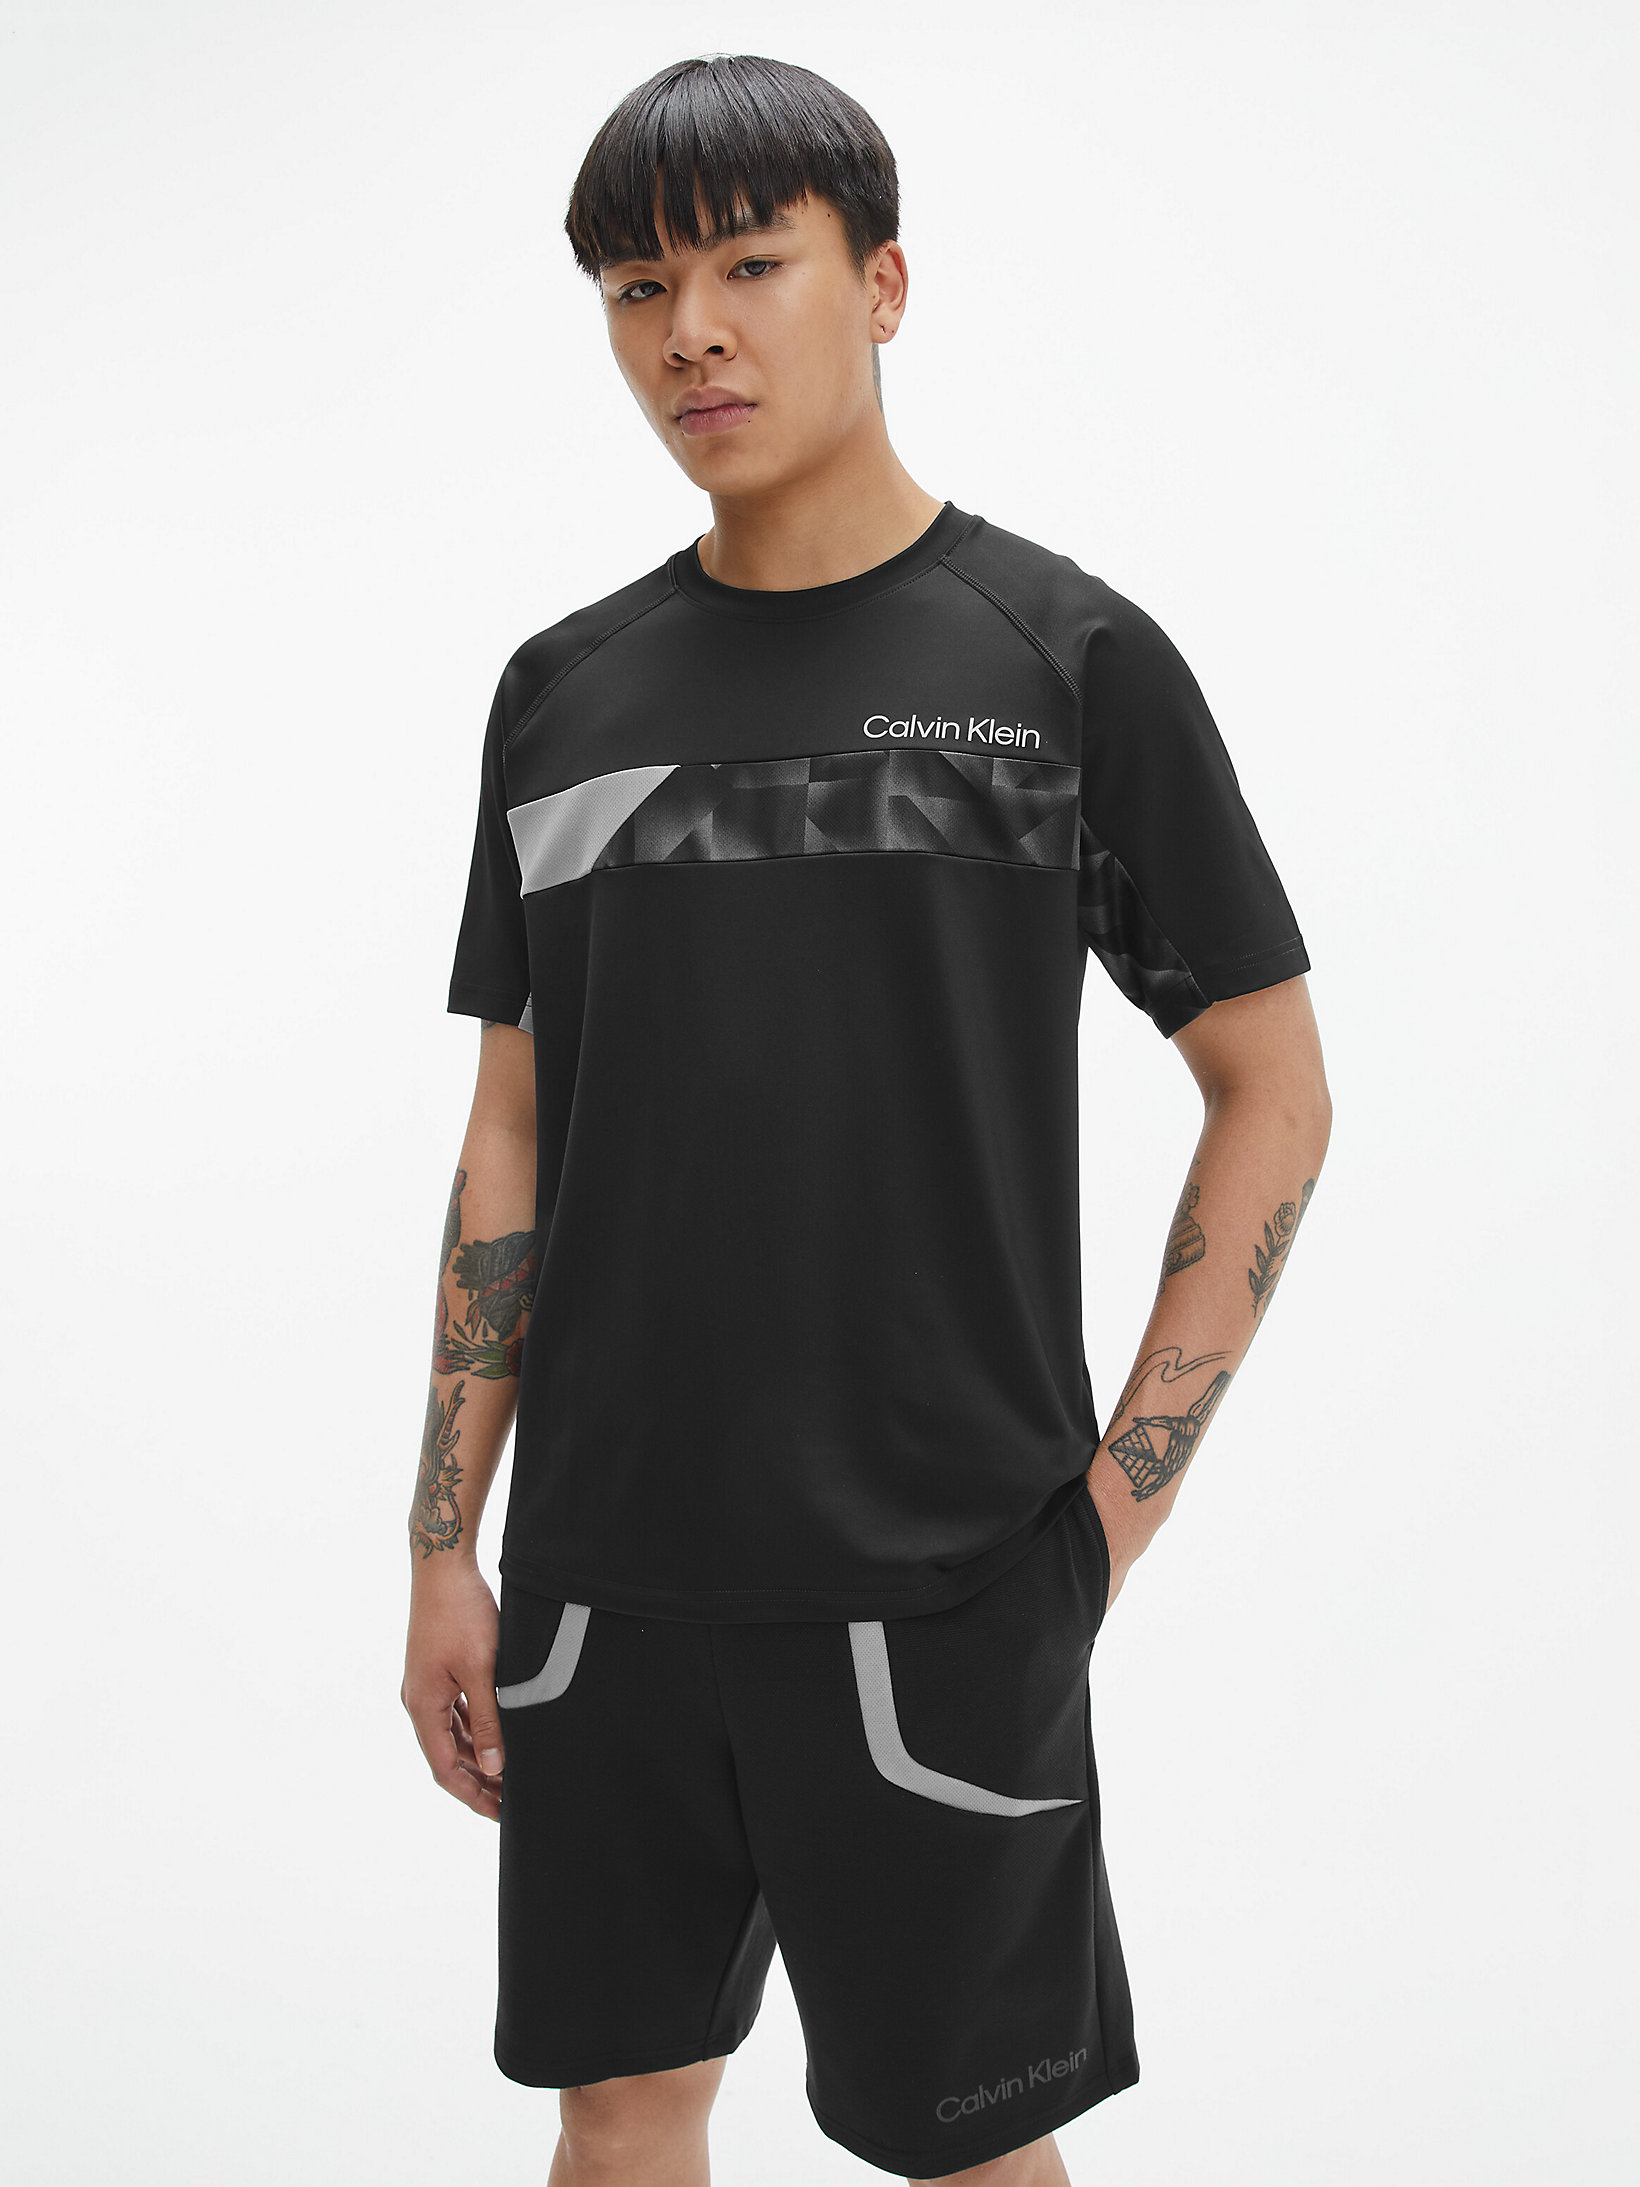 CK Black Gym T-Shirt undefined men Calvin Klein